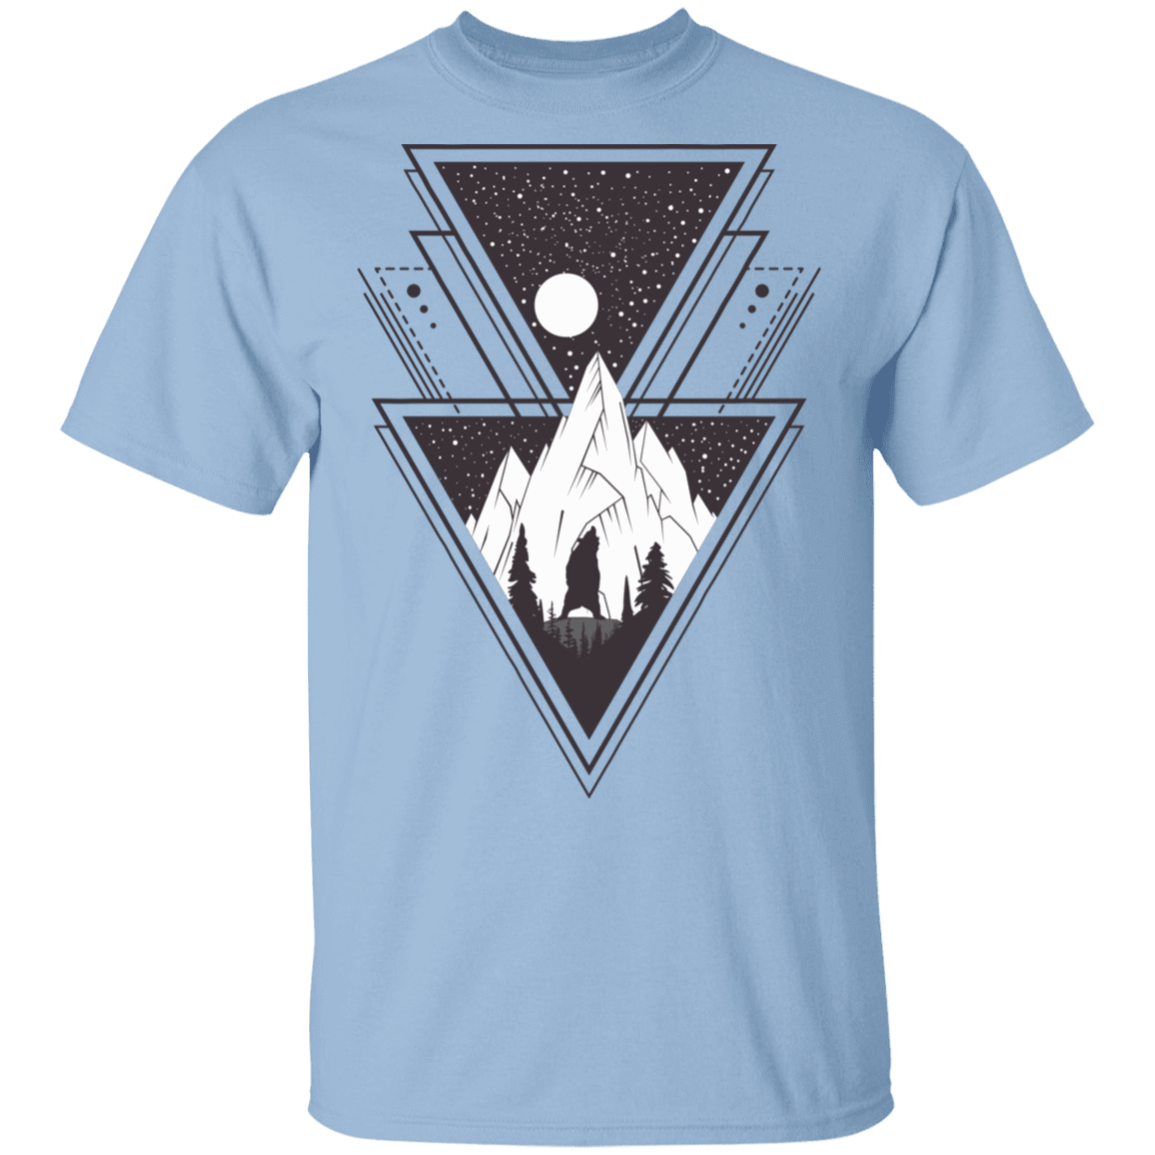 T-Shirts Light Blue / S Triangle Bear Art T-Shirt